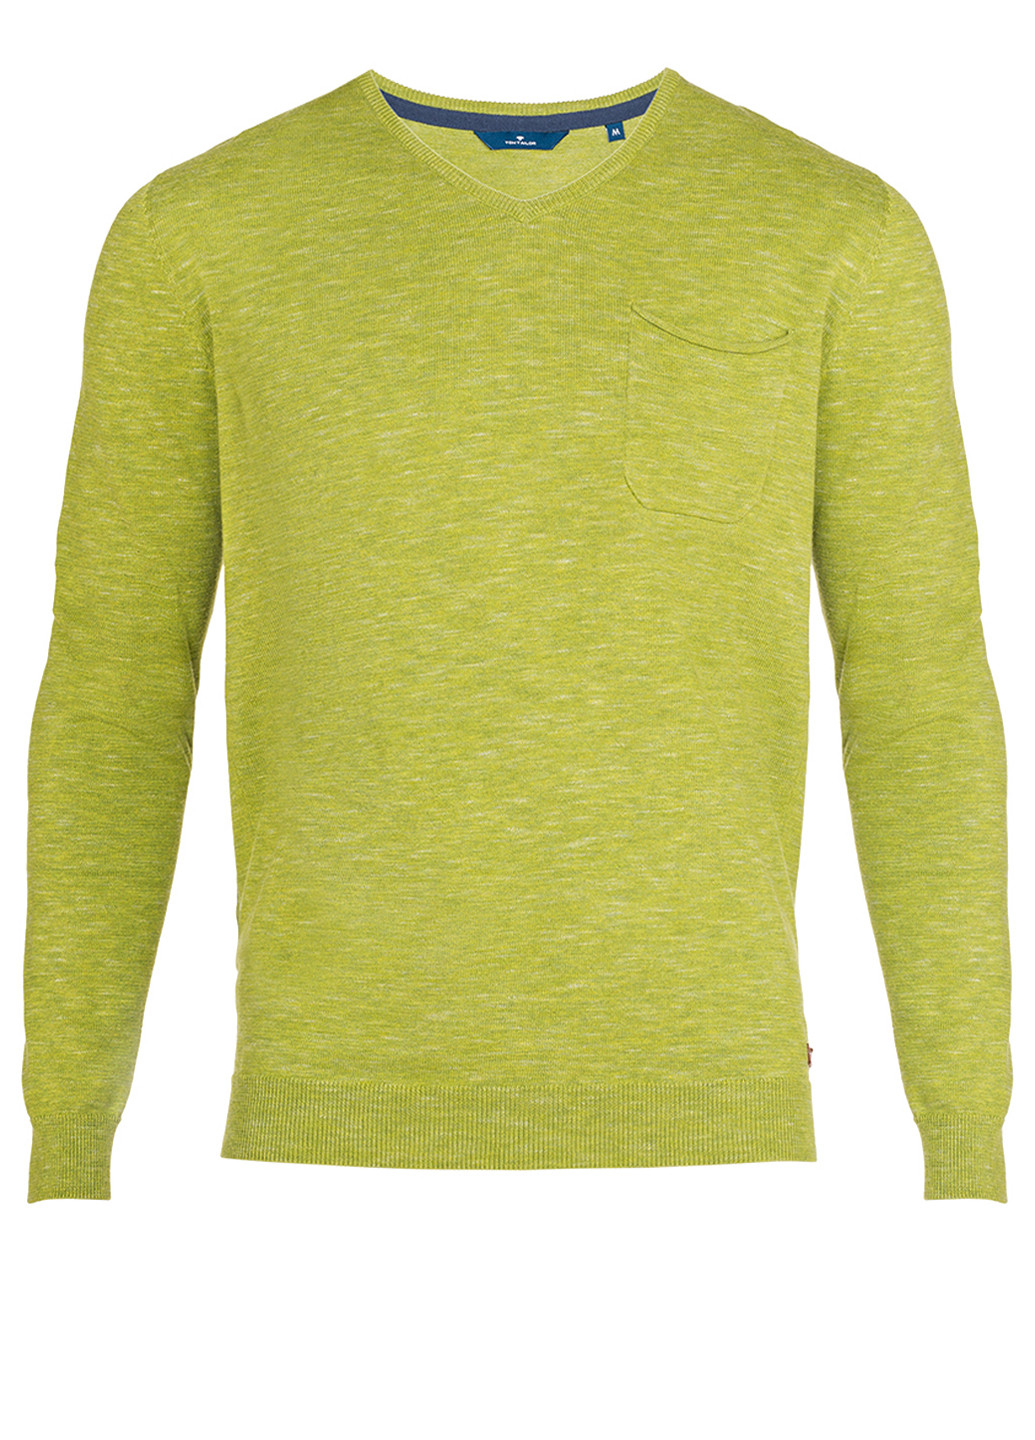 Салатовый демисезонный мужской салатовый свитер пуловер пуловер Tom Tailor